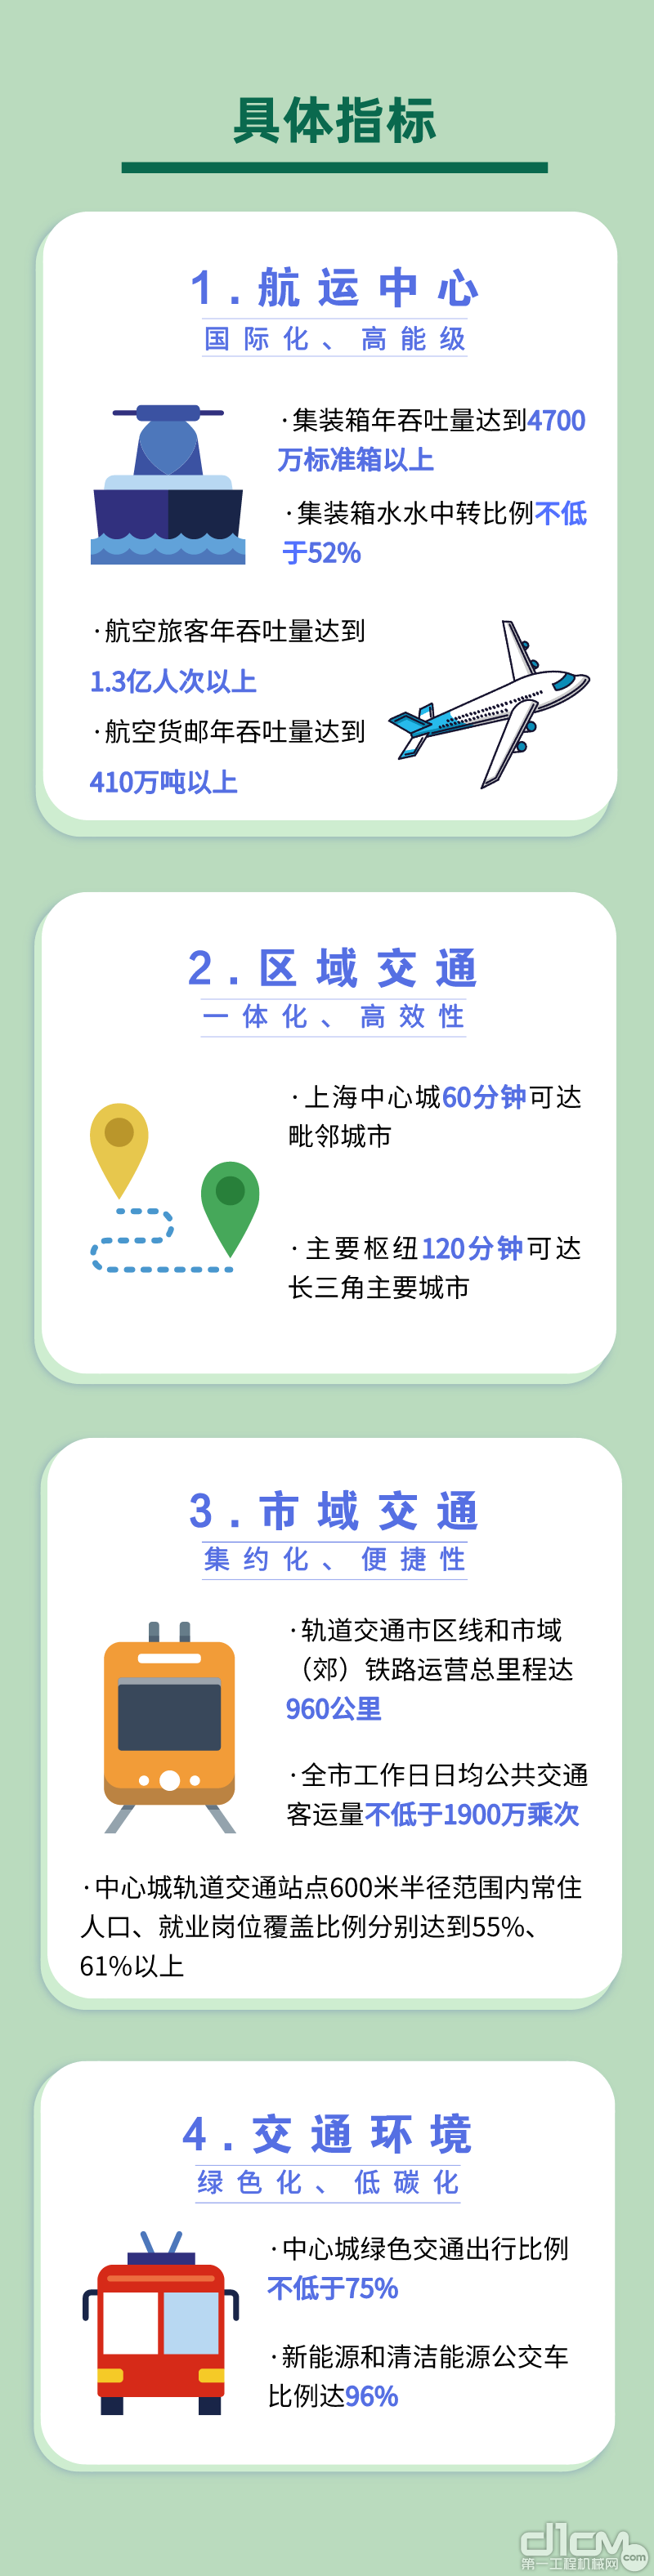 上海市综合交通发展“十四五”规划公布